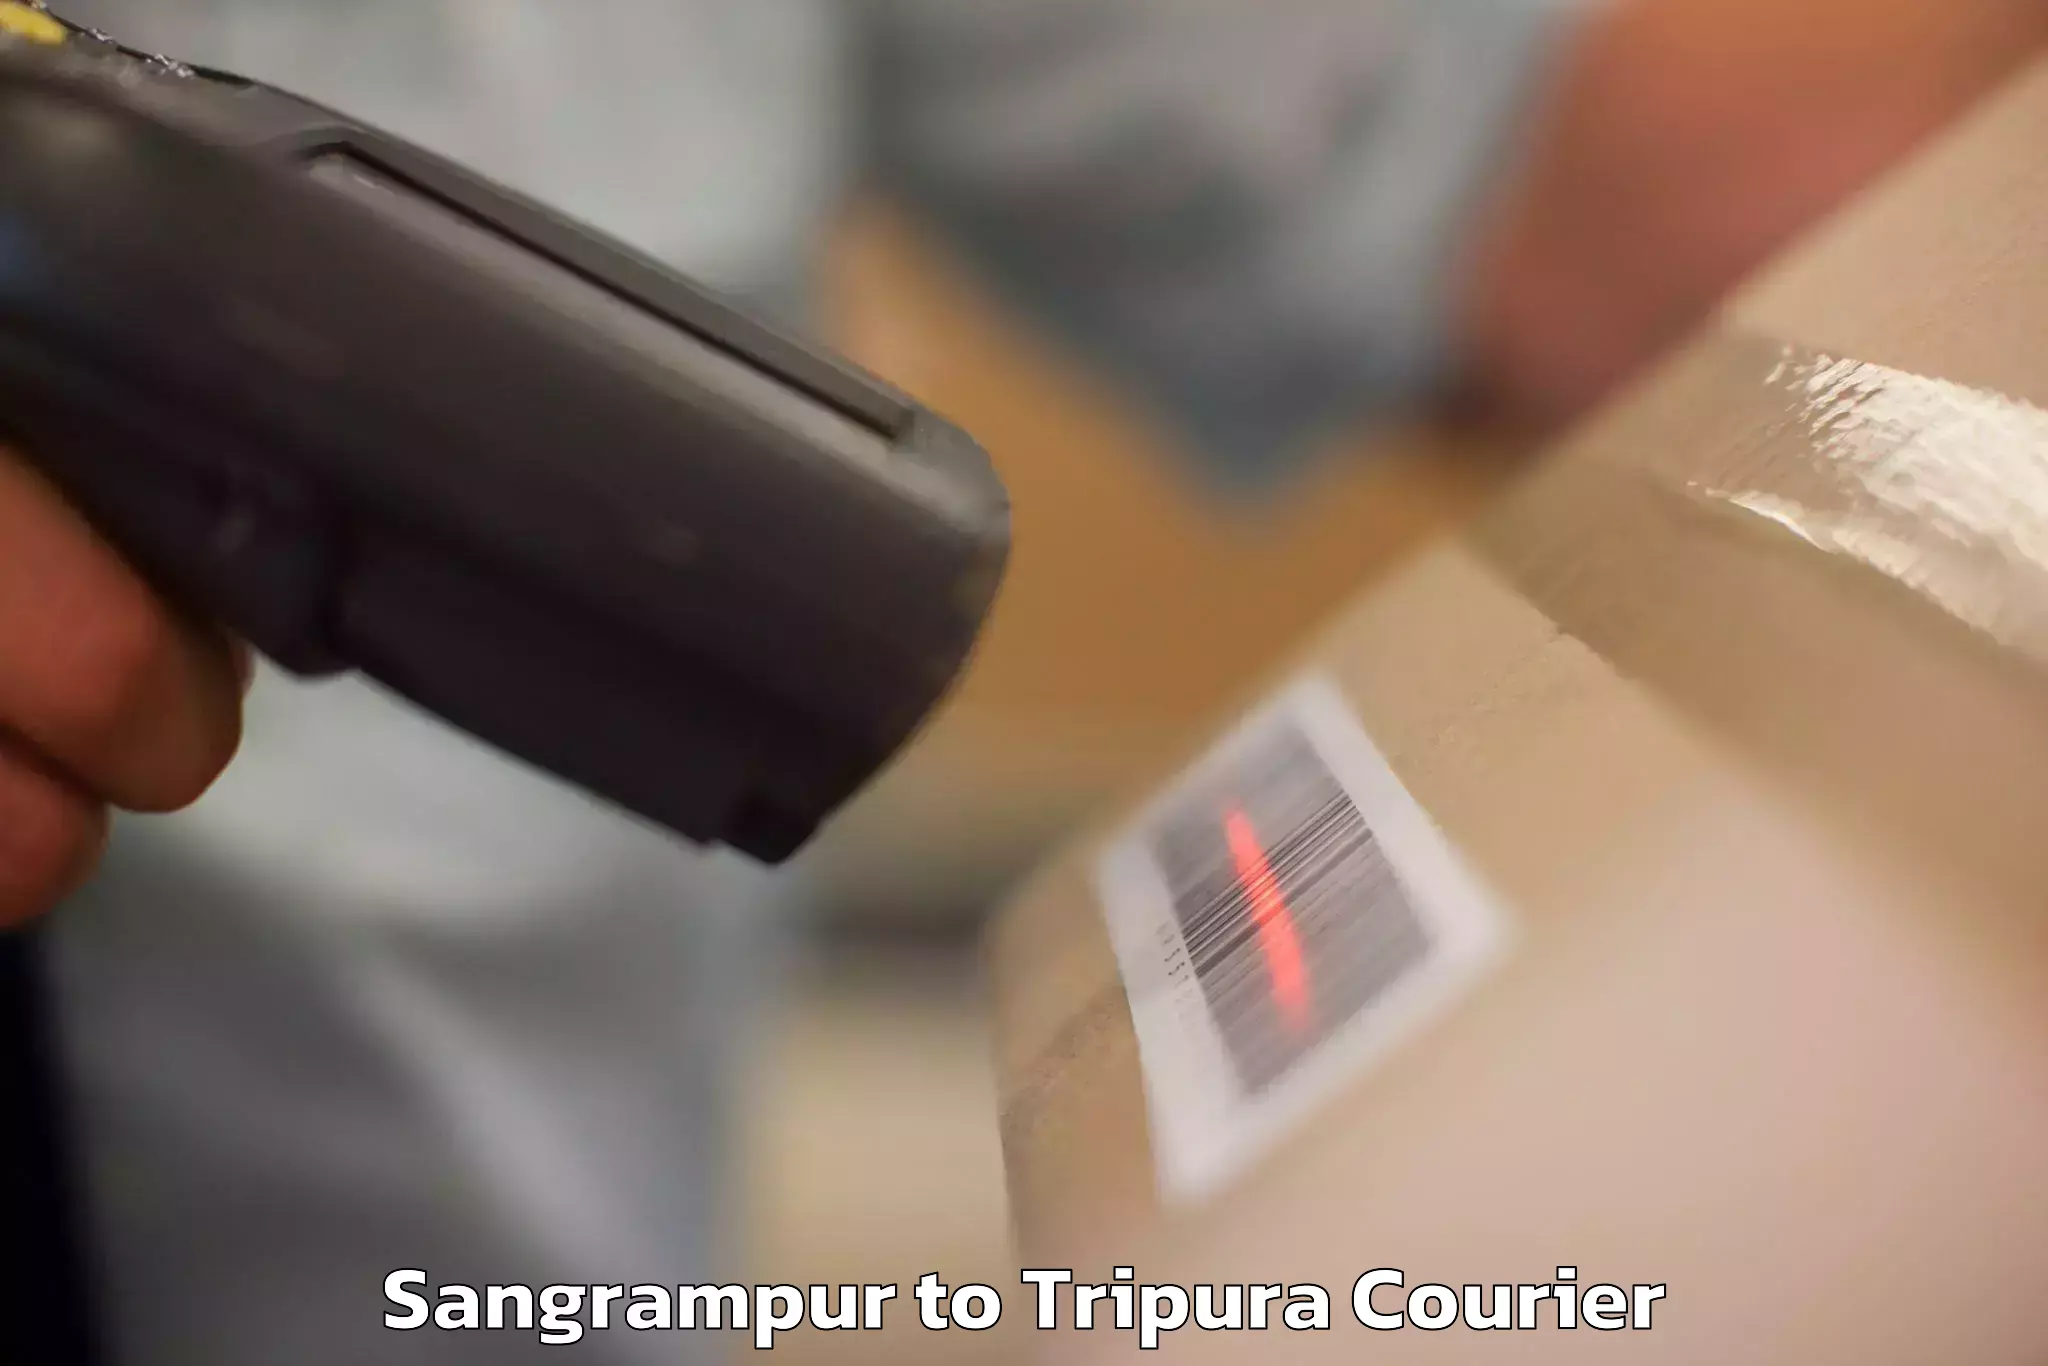 Baggage transport services Sangrampur to Kailashahar